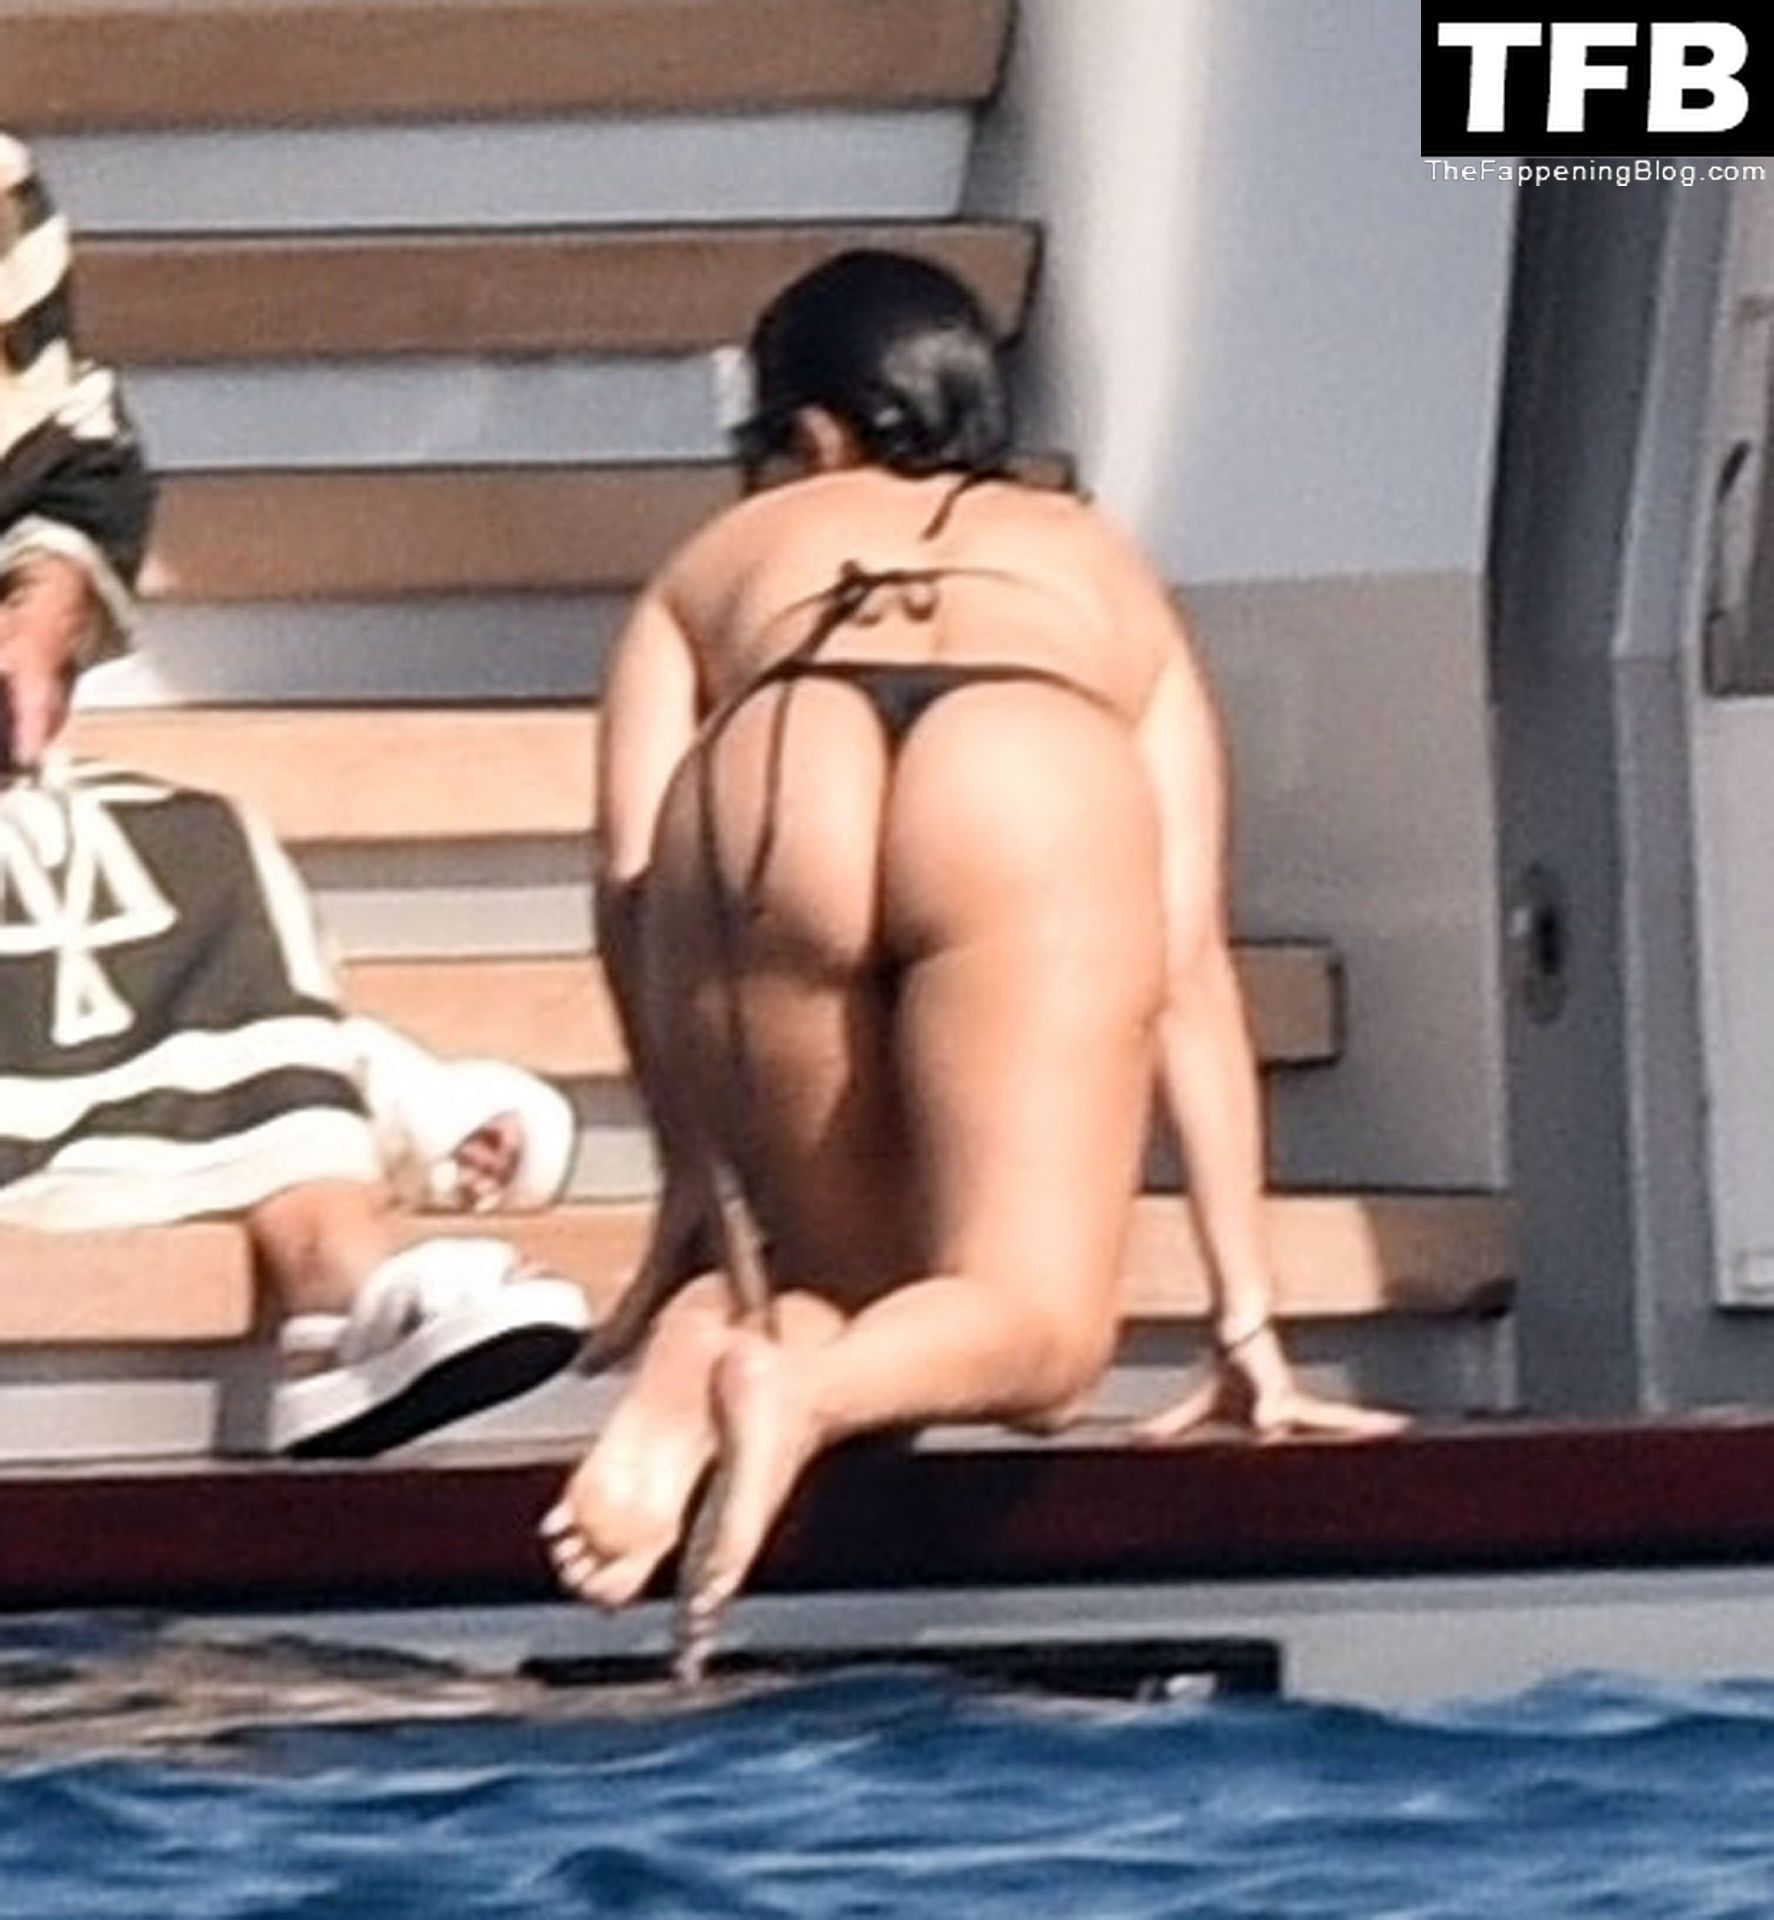 Kourtney-Kardashian-Sexy-The-Fappening-Blog-44-1.jpg